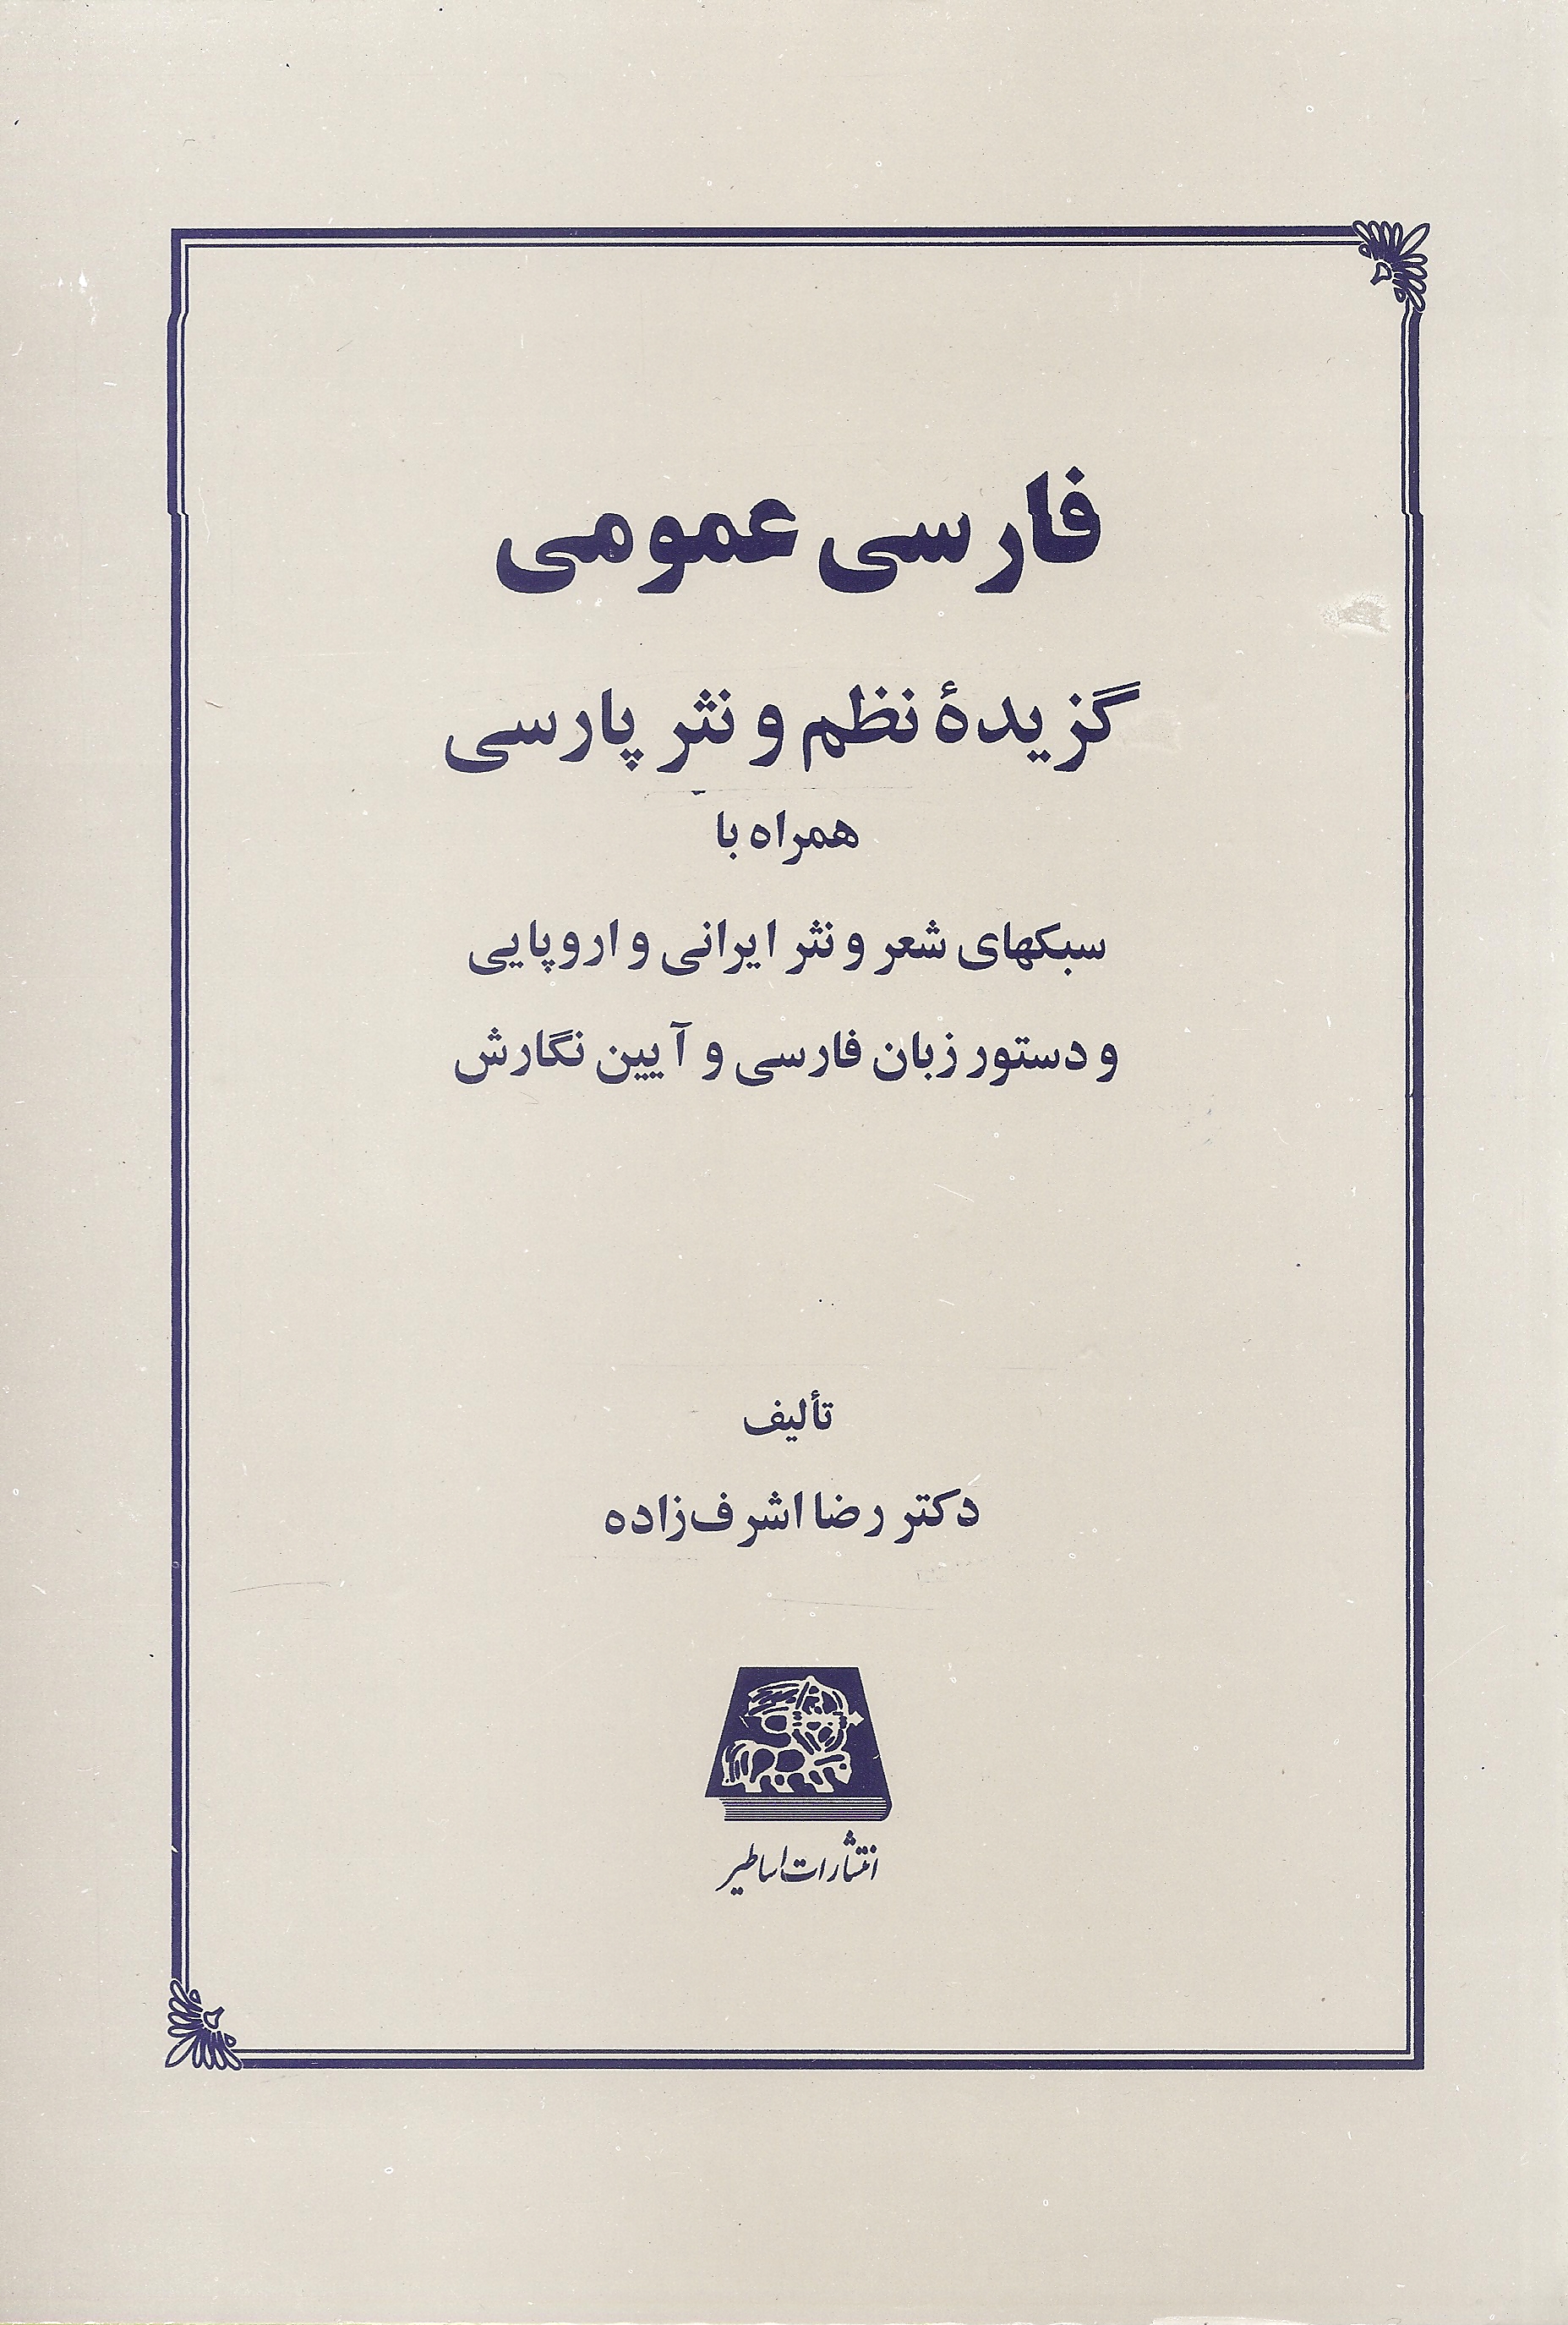 فارسی عمومی گزیده نظم و نثر پارسی(اساطیر)